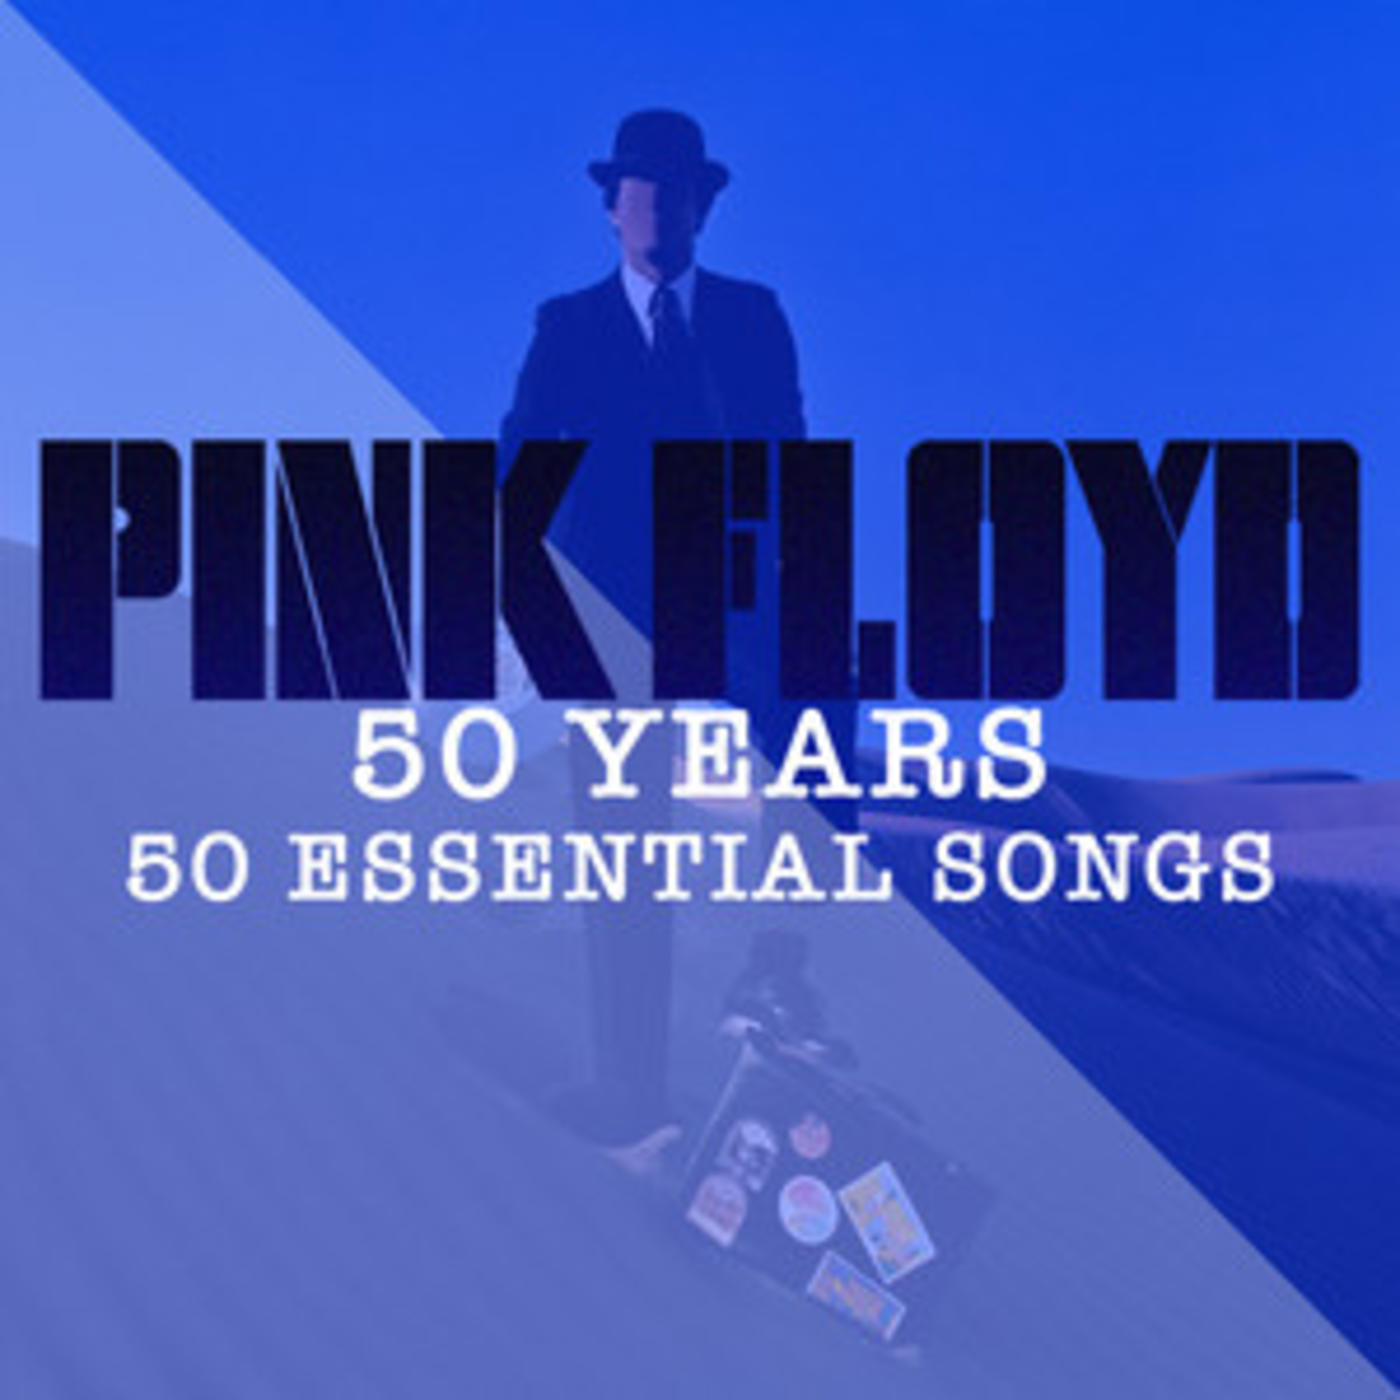 PInk Floyd - 50 Years | 50 Essential Songs